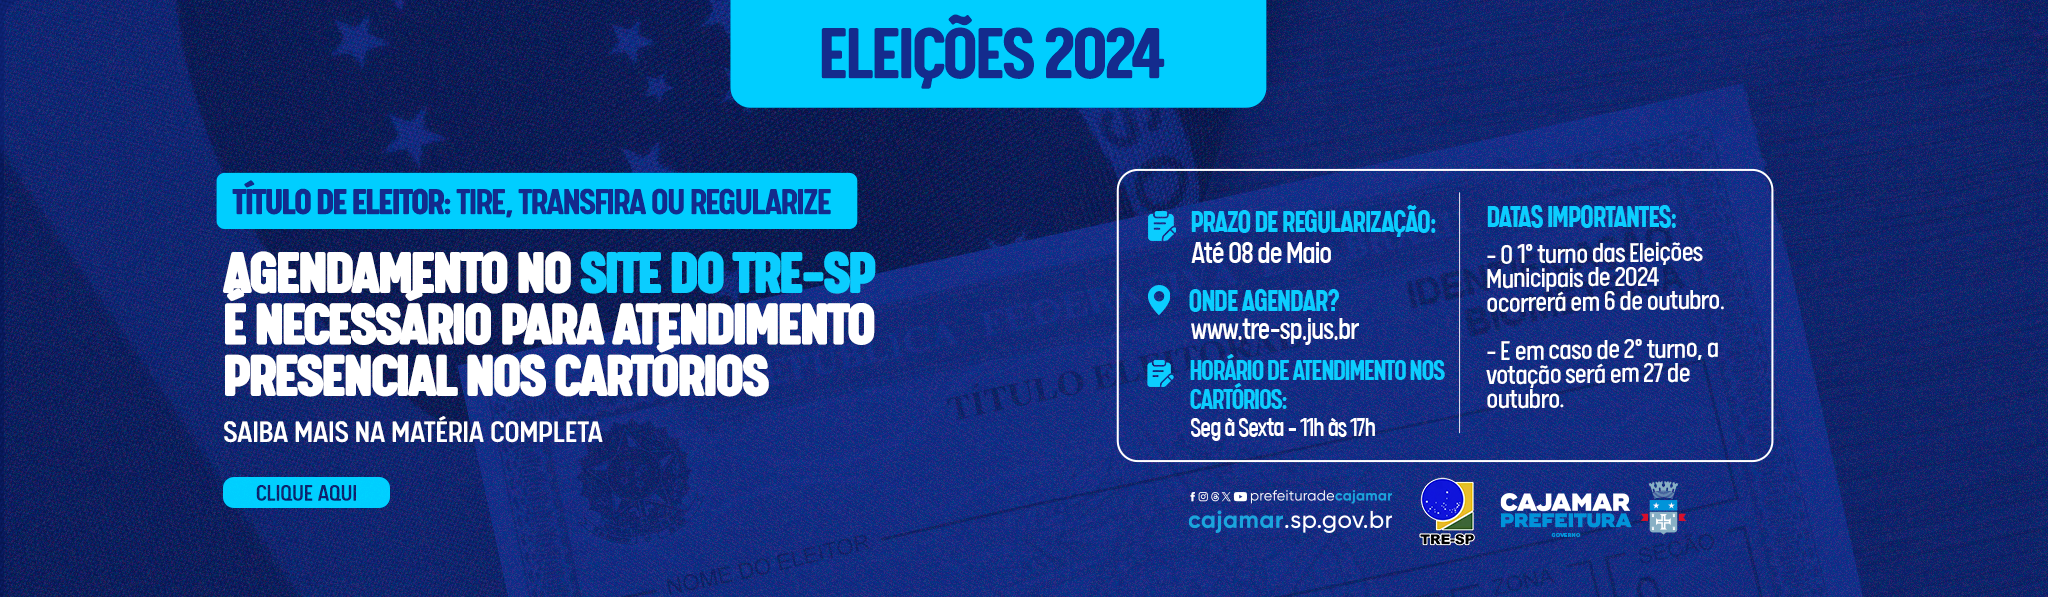 Eleições 2024 TRE-SP